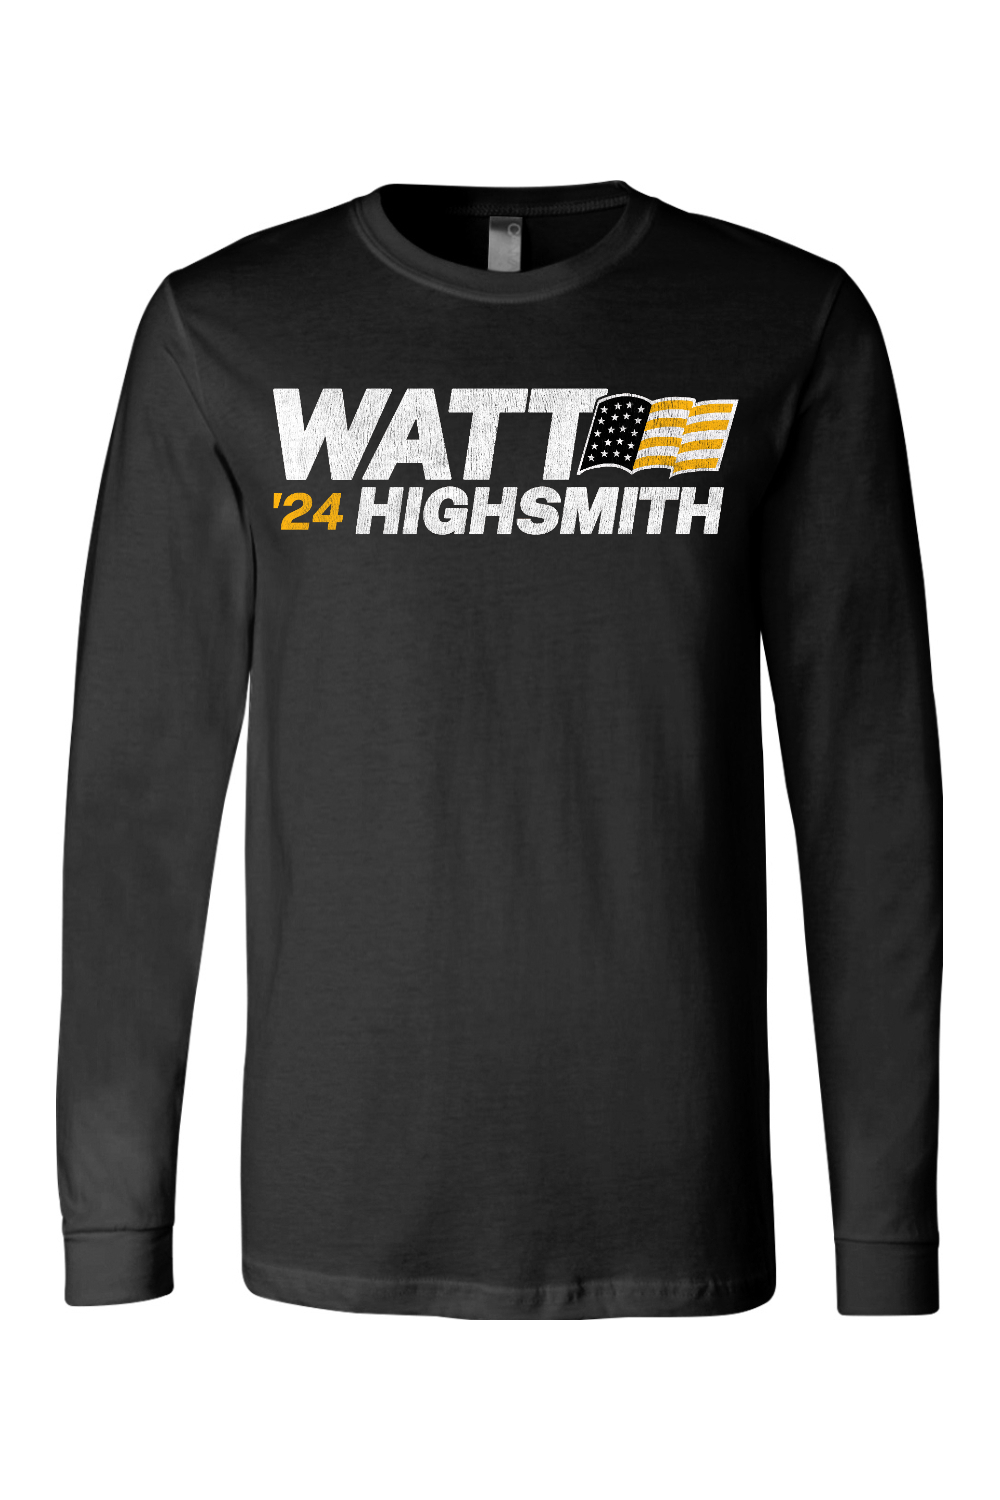 Watt Highsmith '24 - Long Sleeve Tee - Yinzylvania